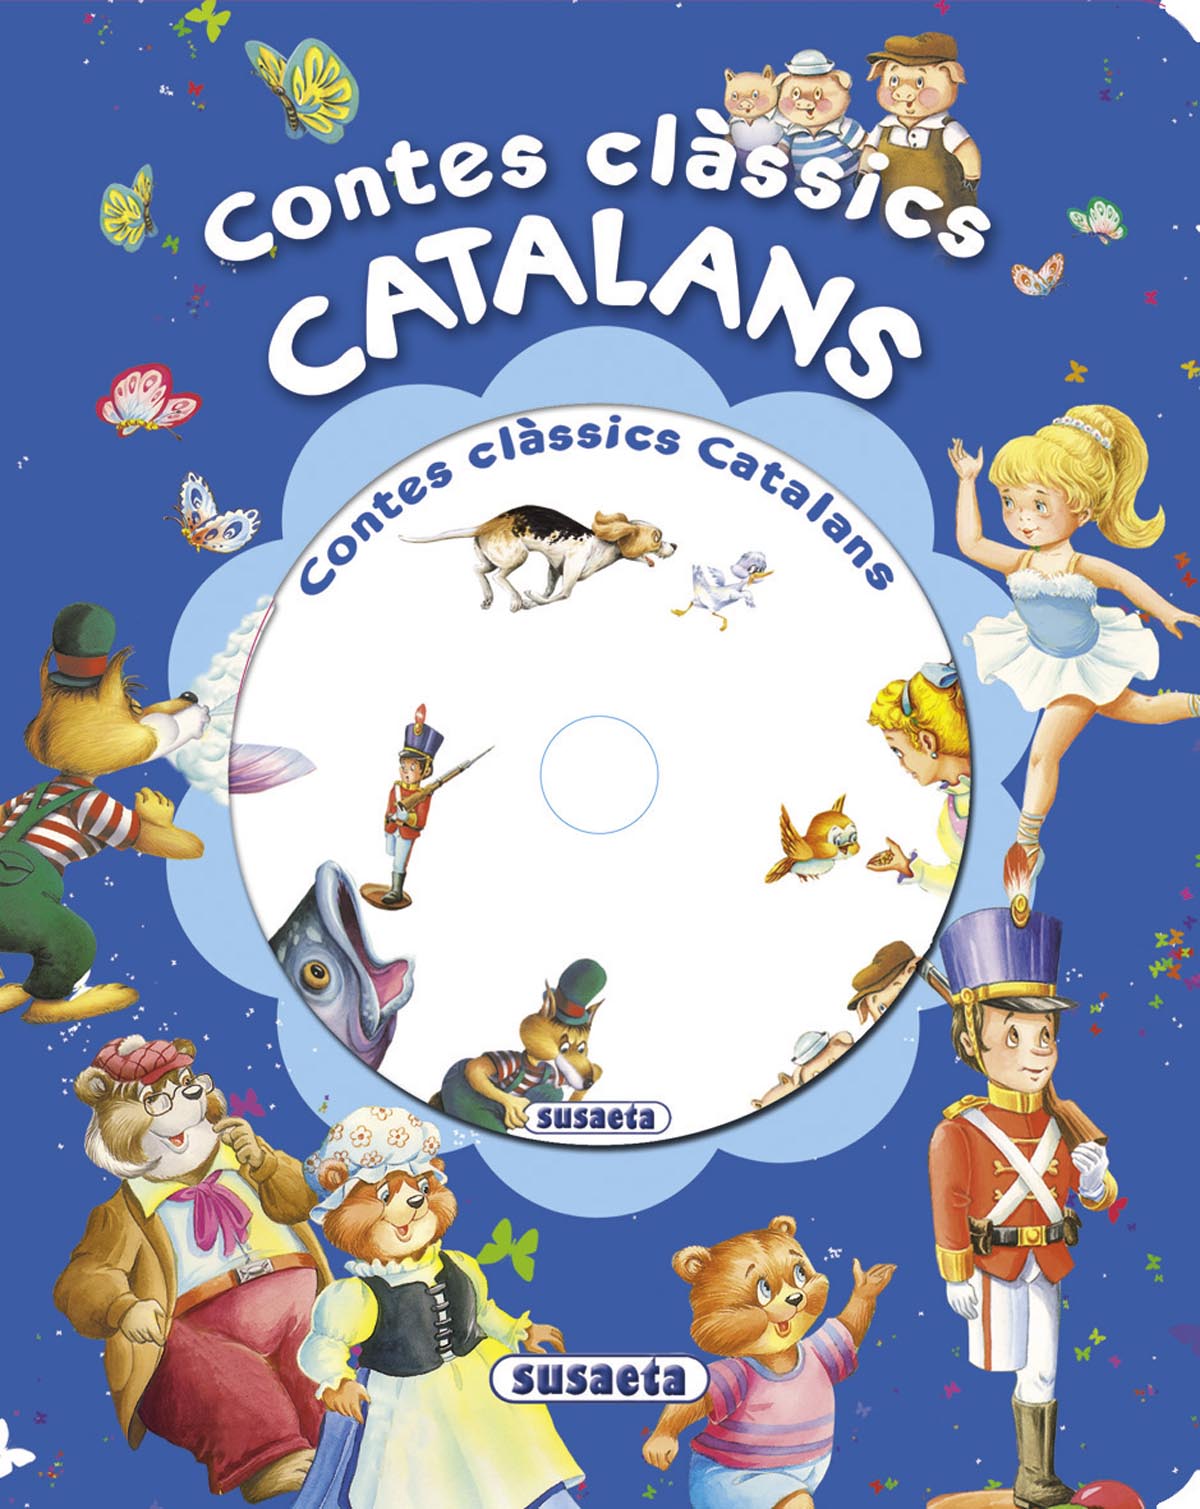 Contes clàssics catalans